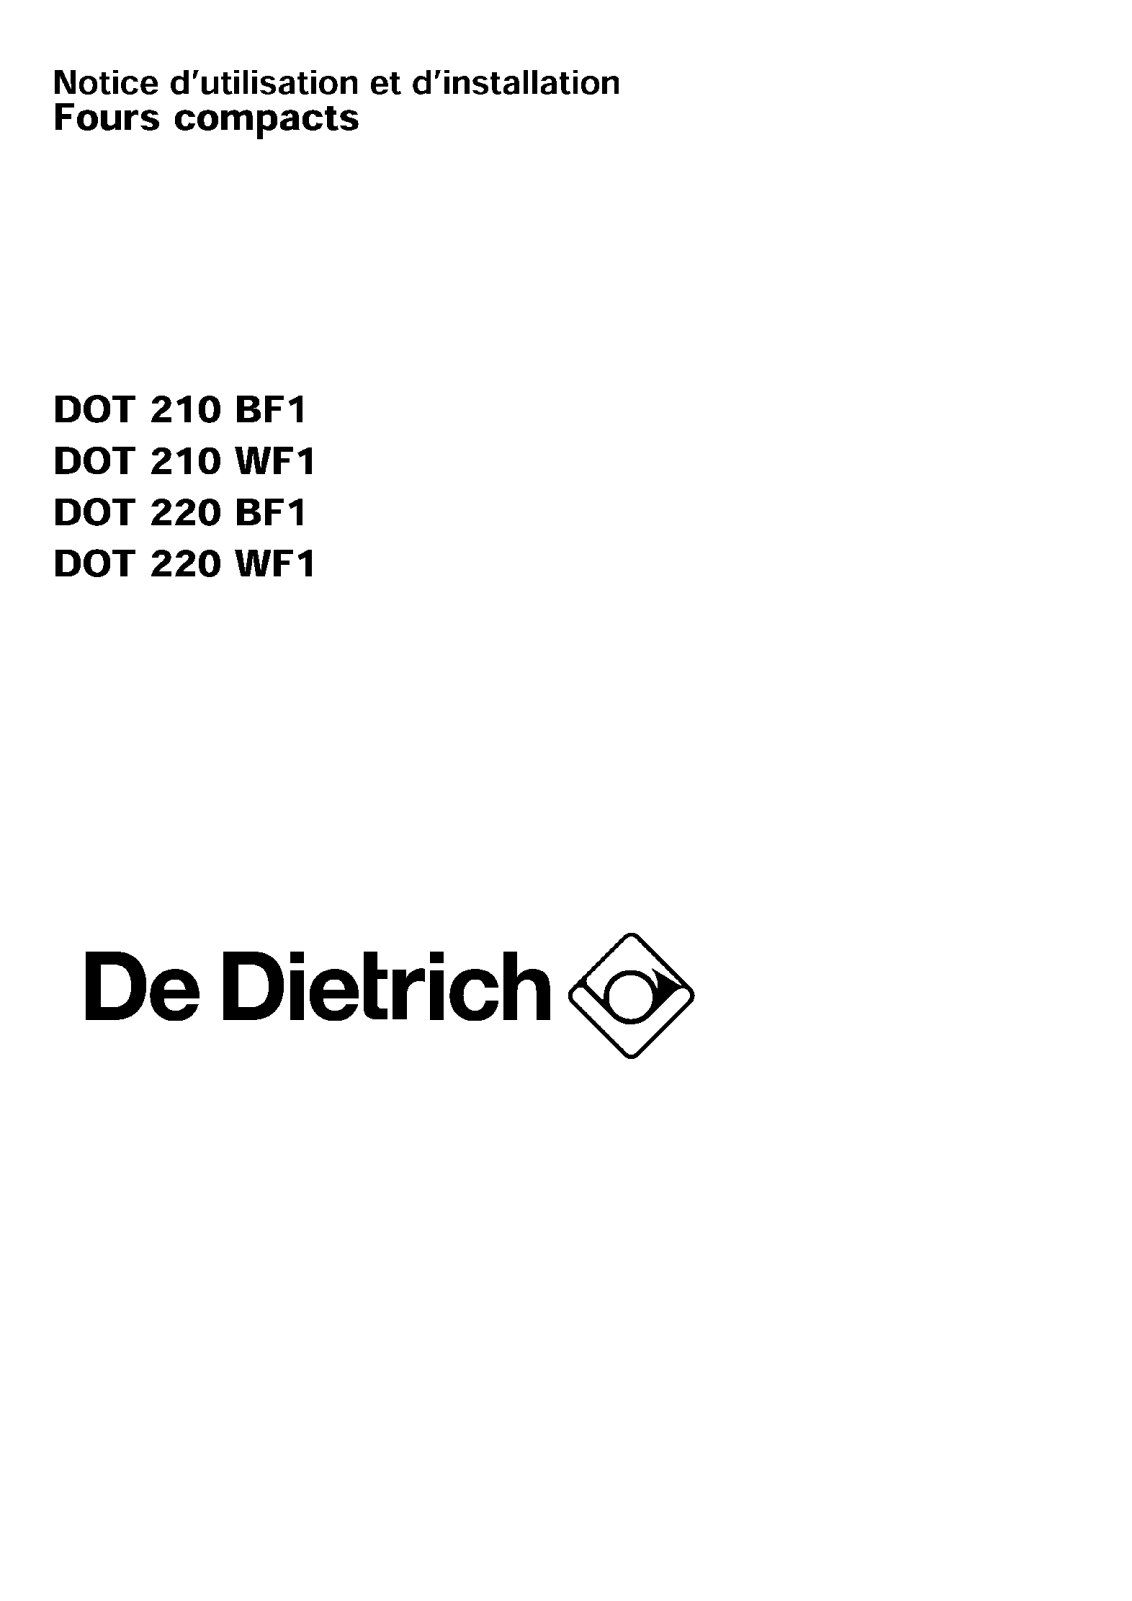 De dietrich dot 210 bf1, dot 210 wf1, dot 220bf1, dot 220wf1 User Manual